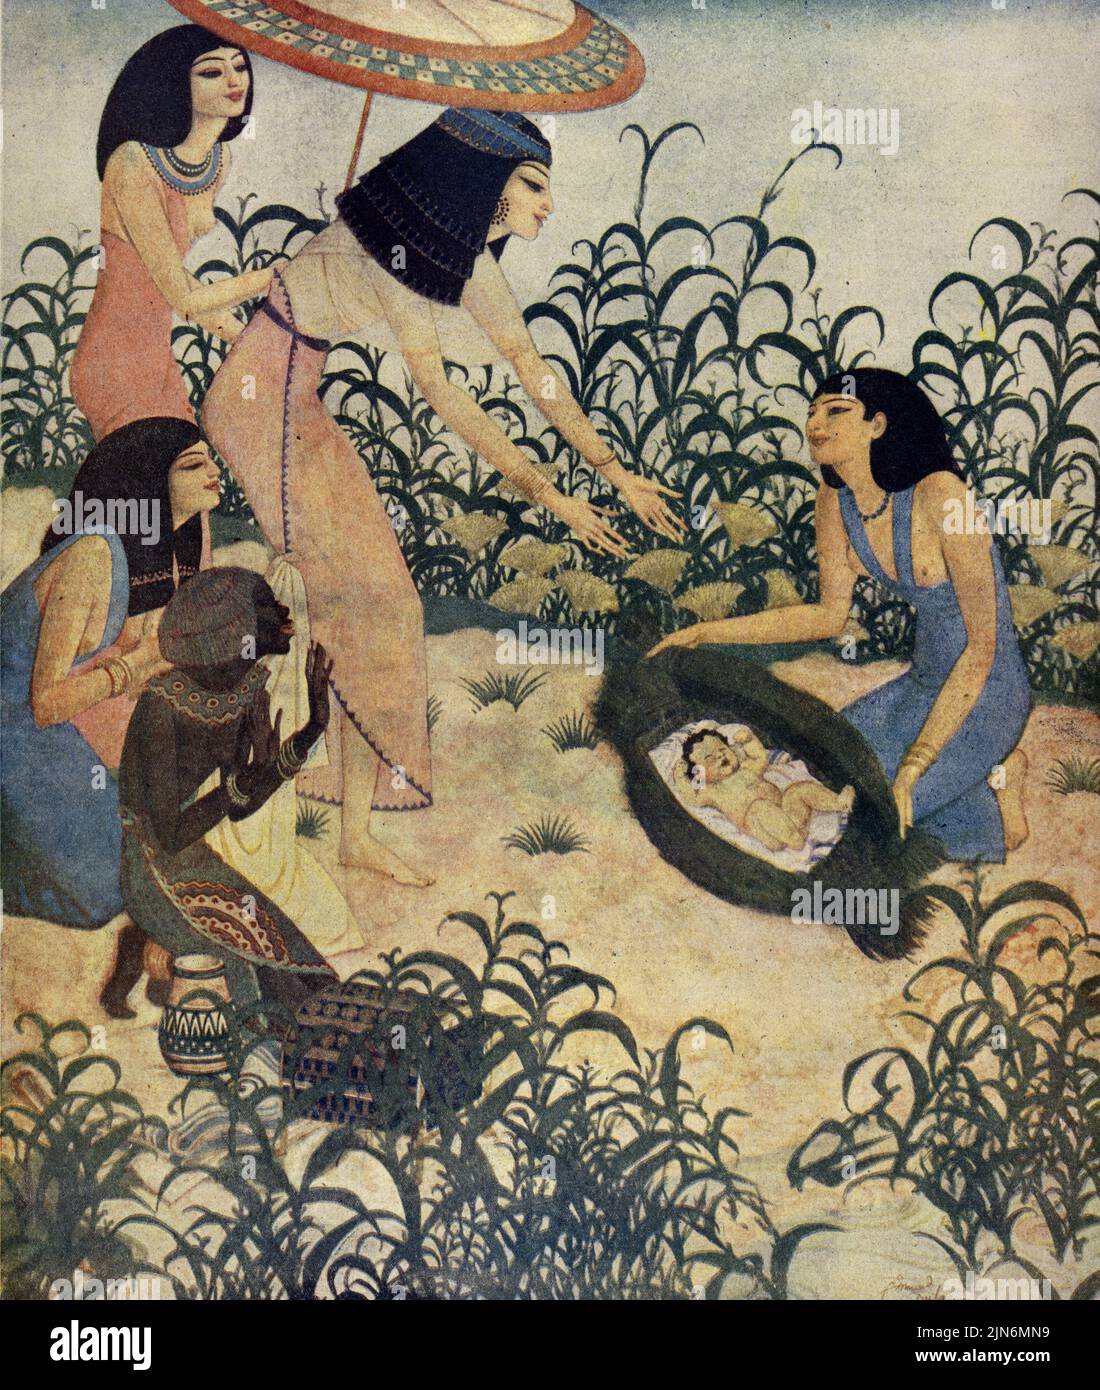 'Le Moses bébé se trouve dans les taureaux par la fille de Pharaon' sur 19 octobre, 1924 dans le magazine American Weekly Sunday peint par Edmund Dulac. Banque D'Images